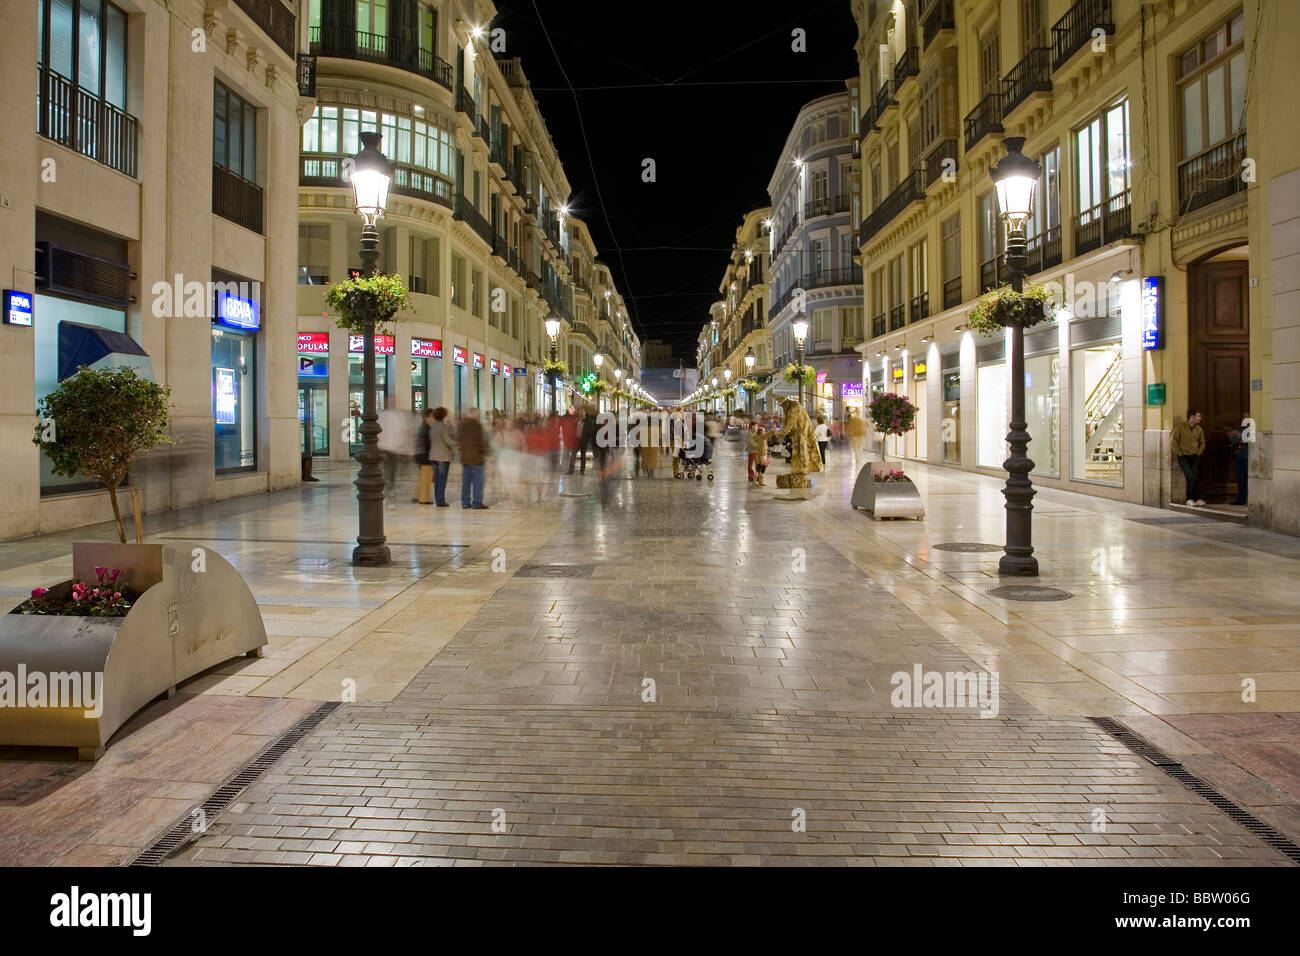 Zona Comercial de Calle Larios en Málaga Costa del Sol Andalousie Espagne Zone Commerciale Calle Larios à malaga andalousie espagne Banque D'Images